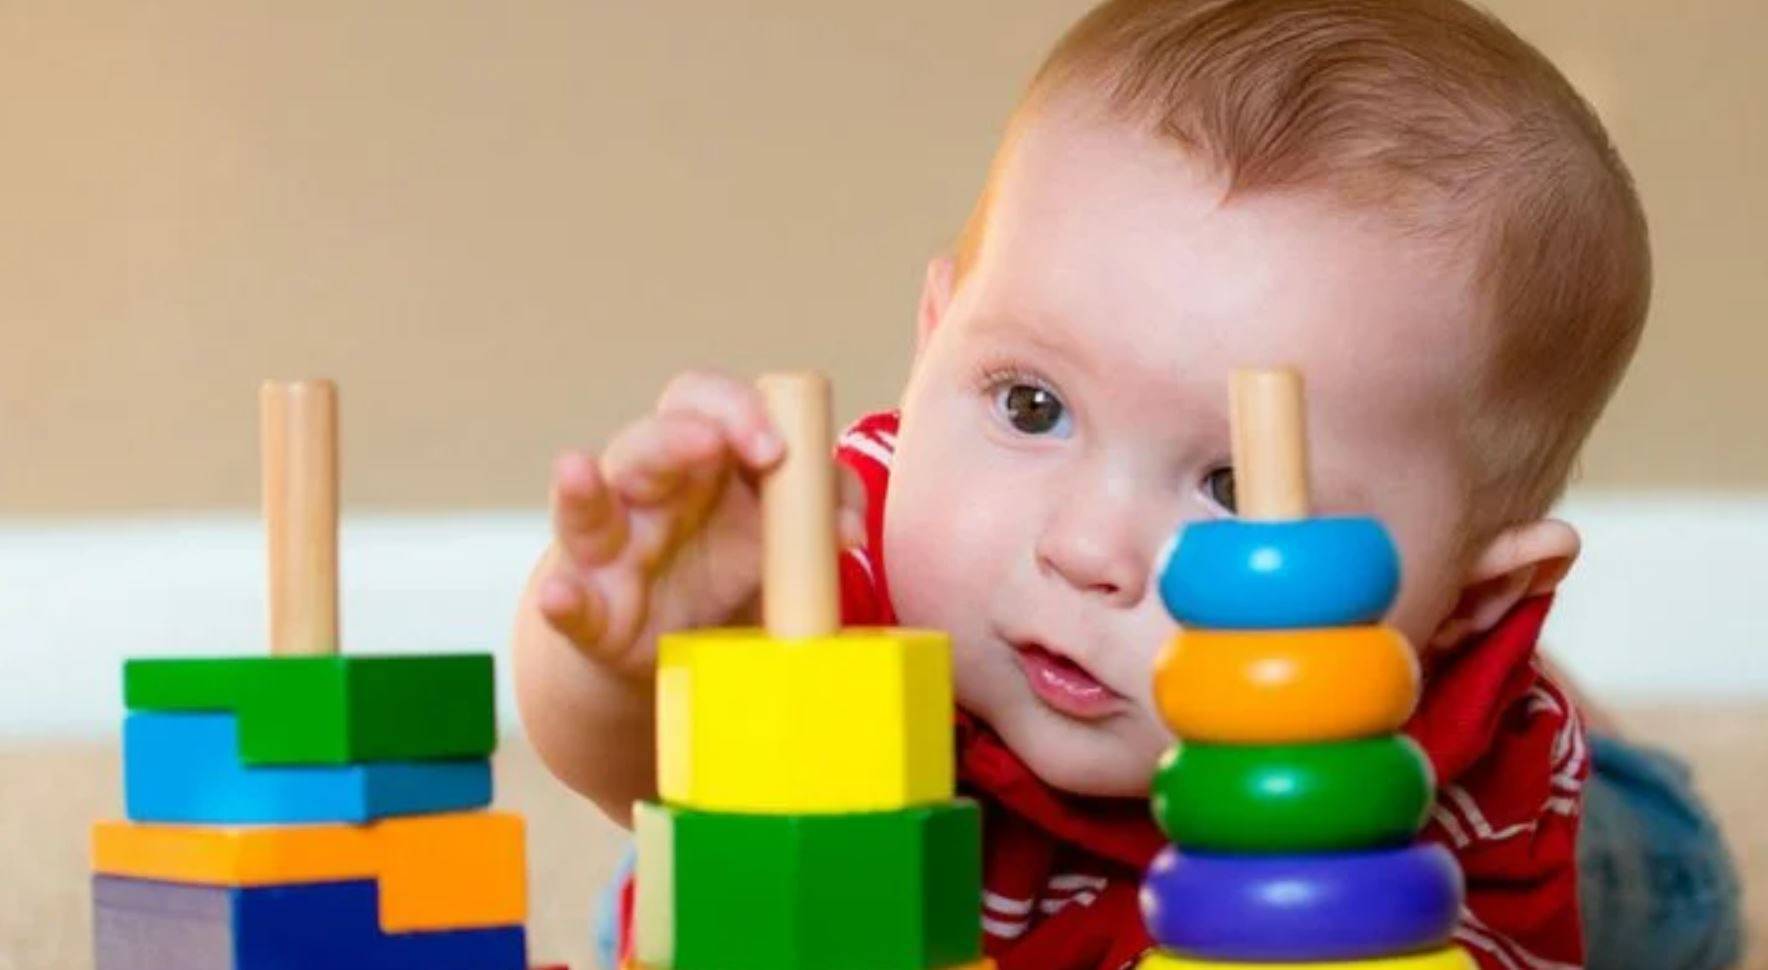 Ребенку 1 год и два месяца – изучаем особенности развития малыша после года